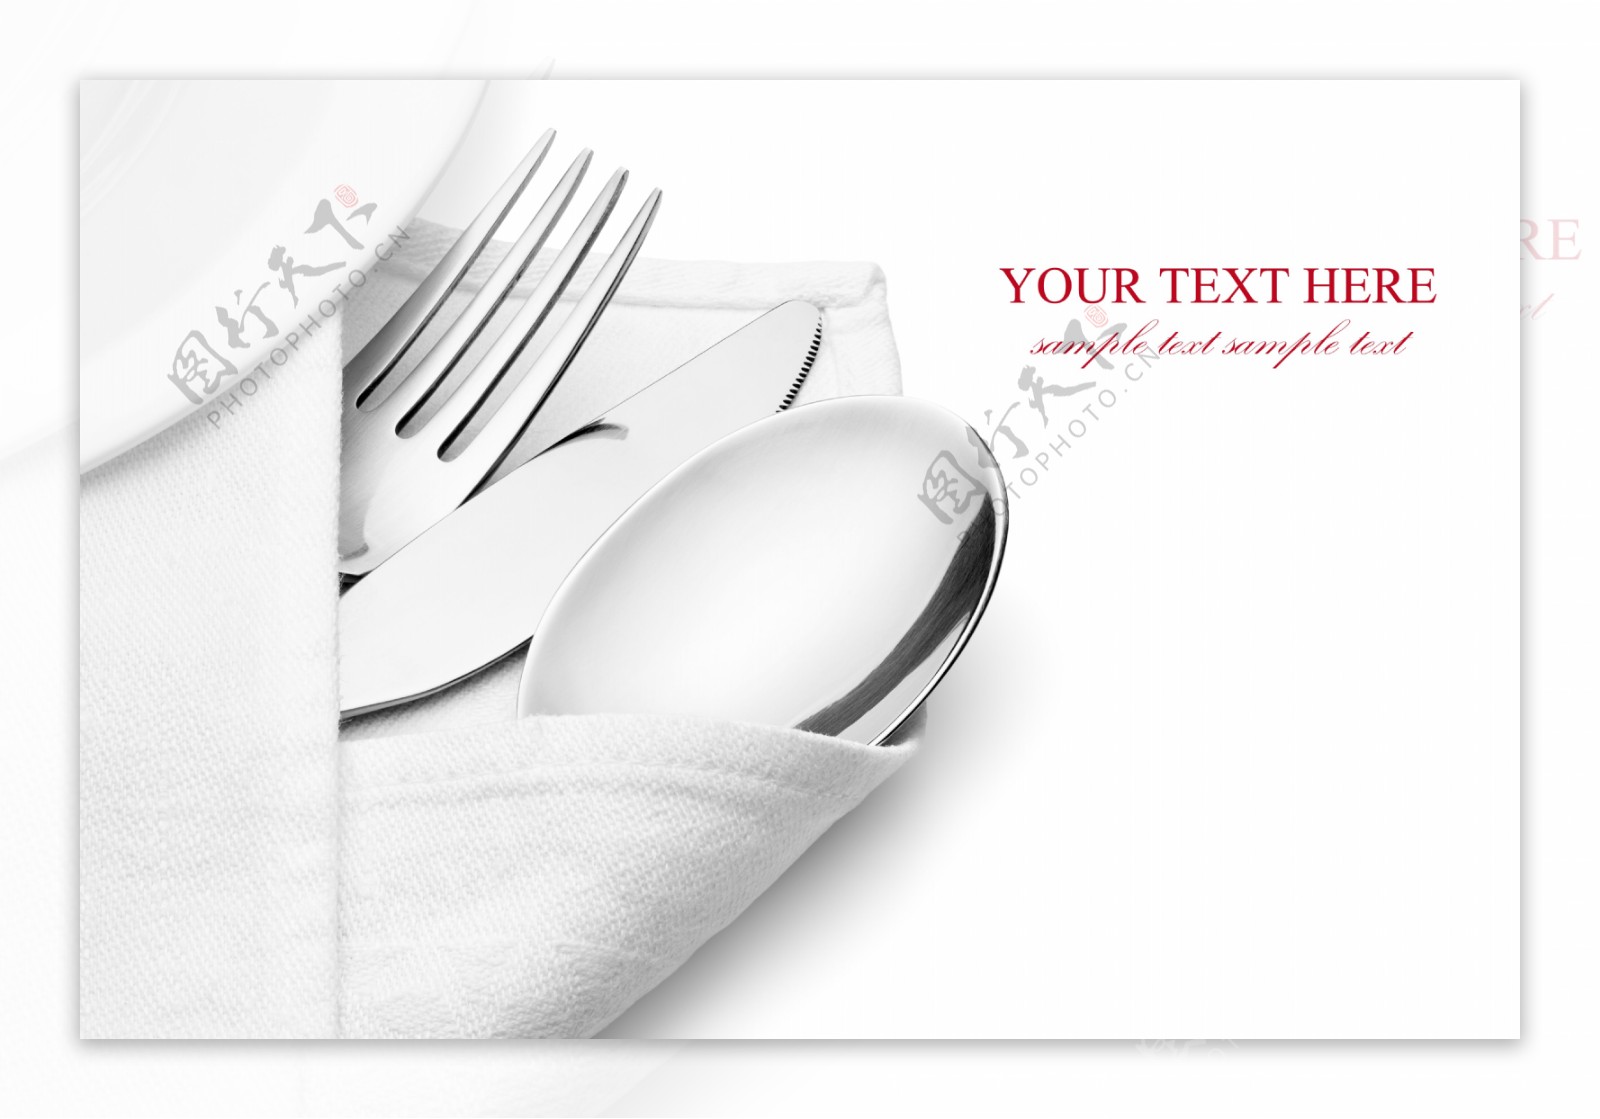 白色餐巾包好的刀叉勺子图片